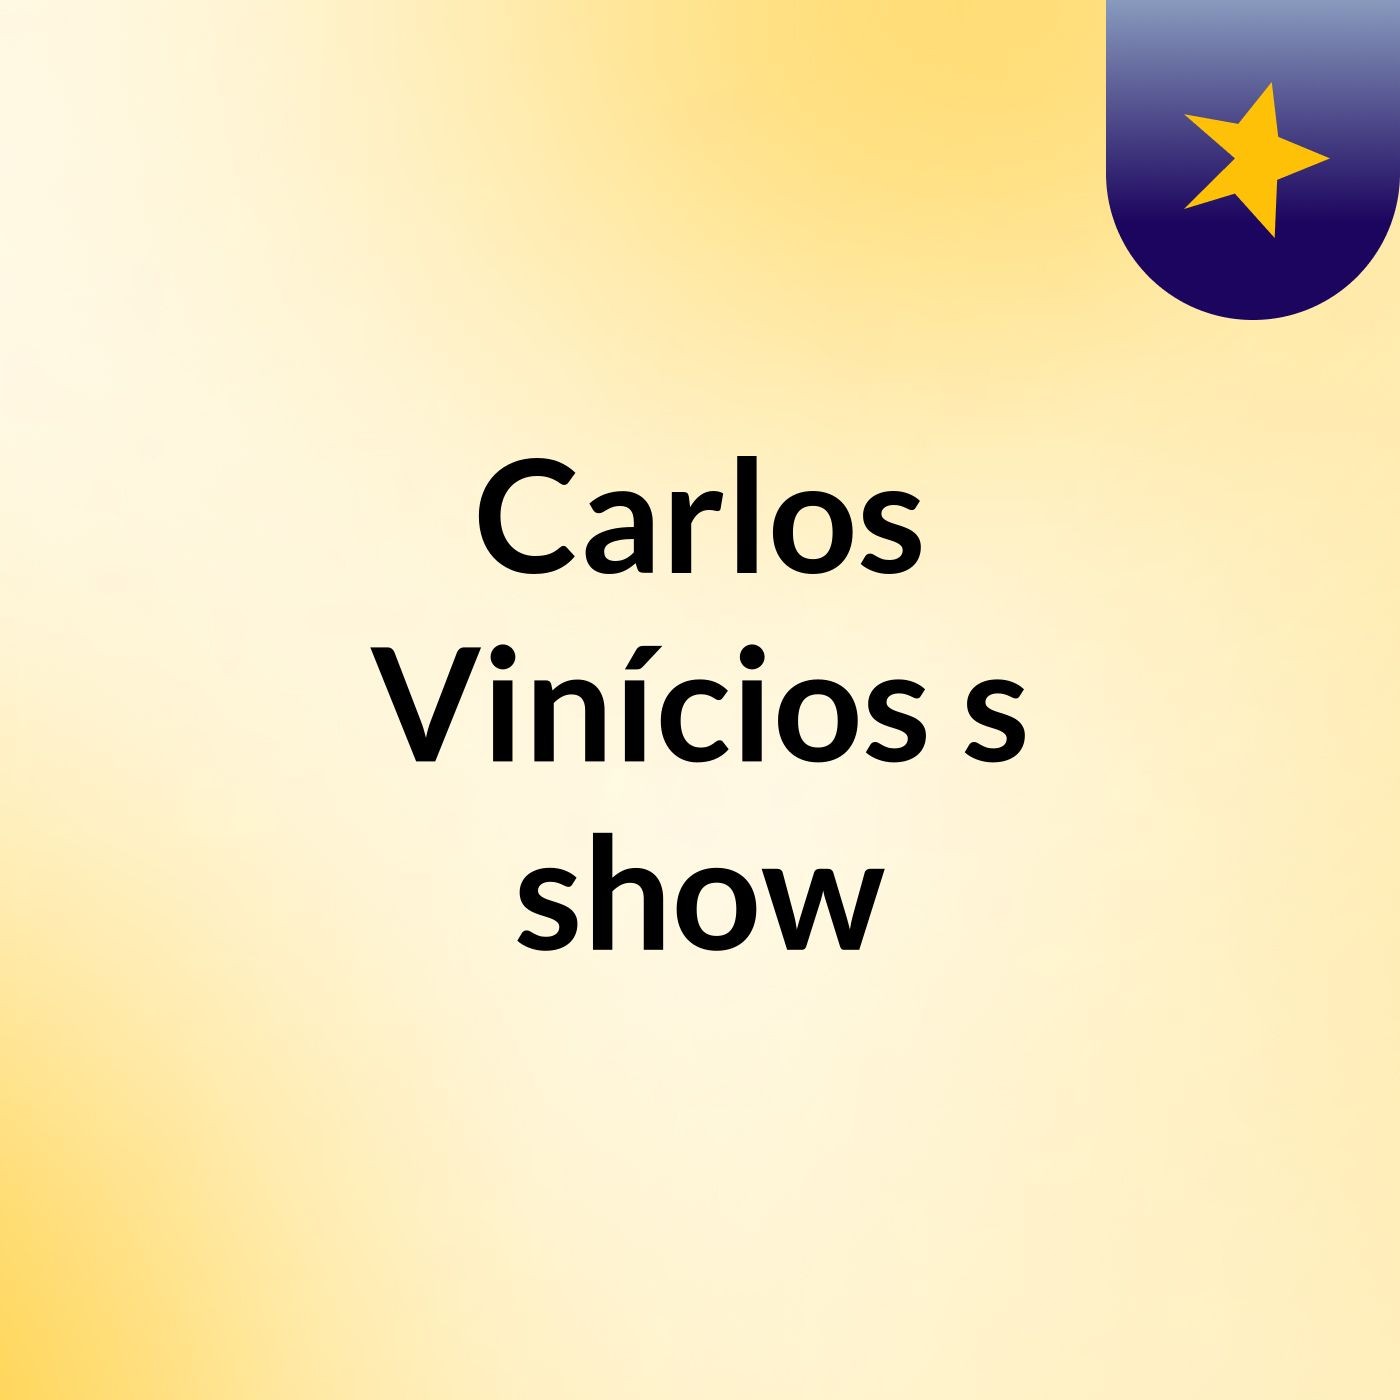 Carlos Vinícios's show